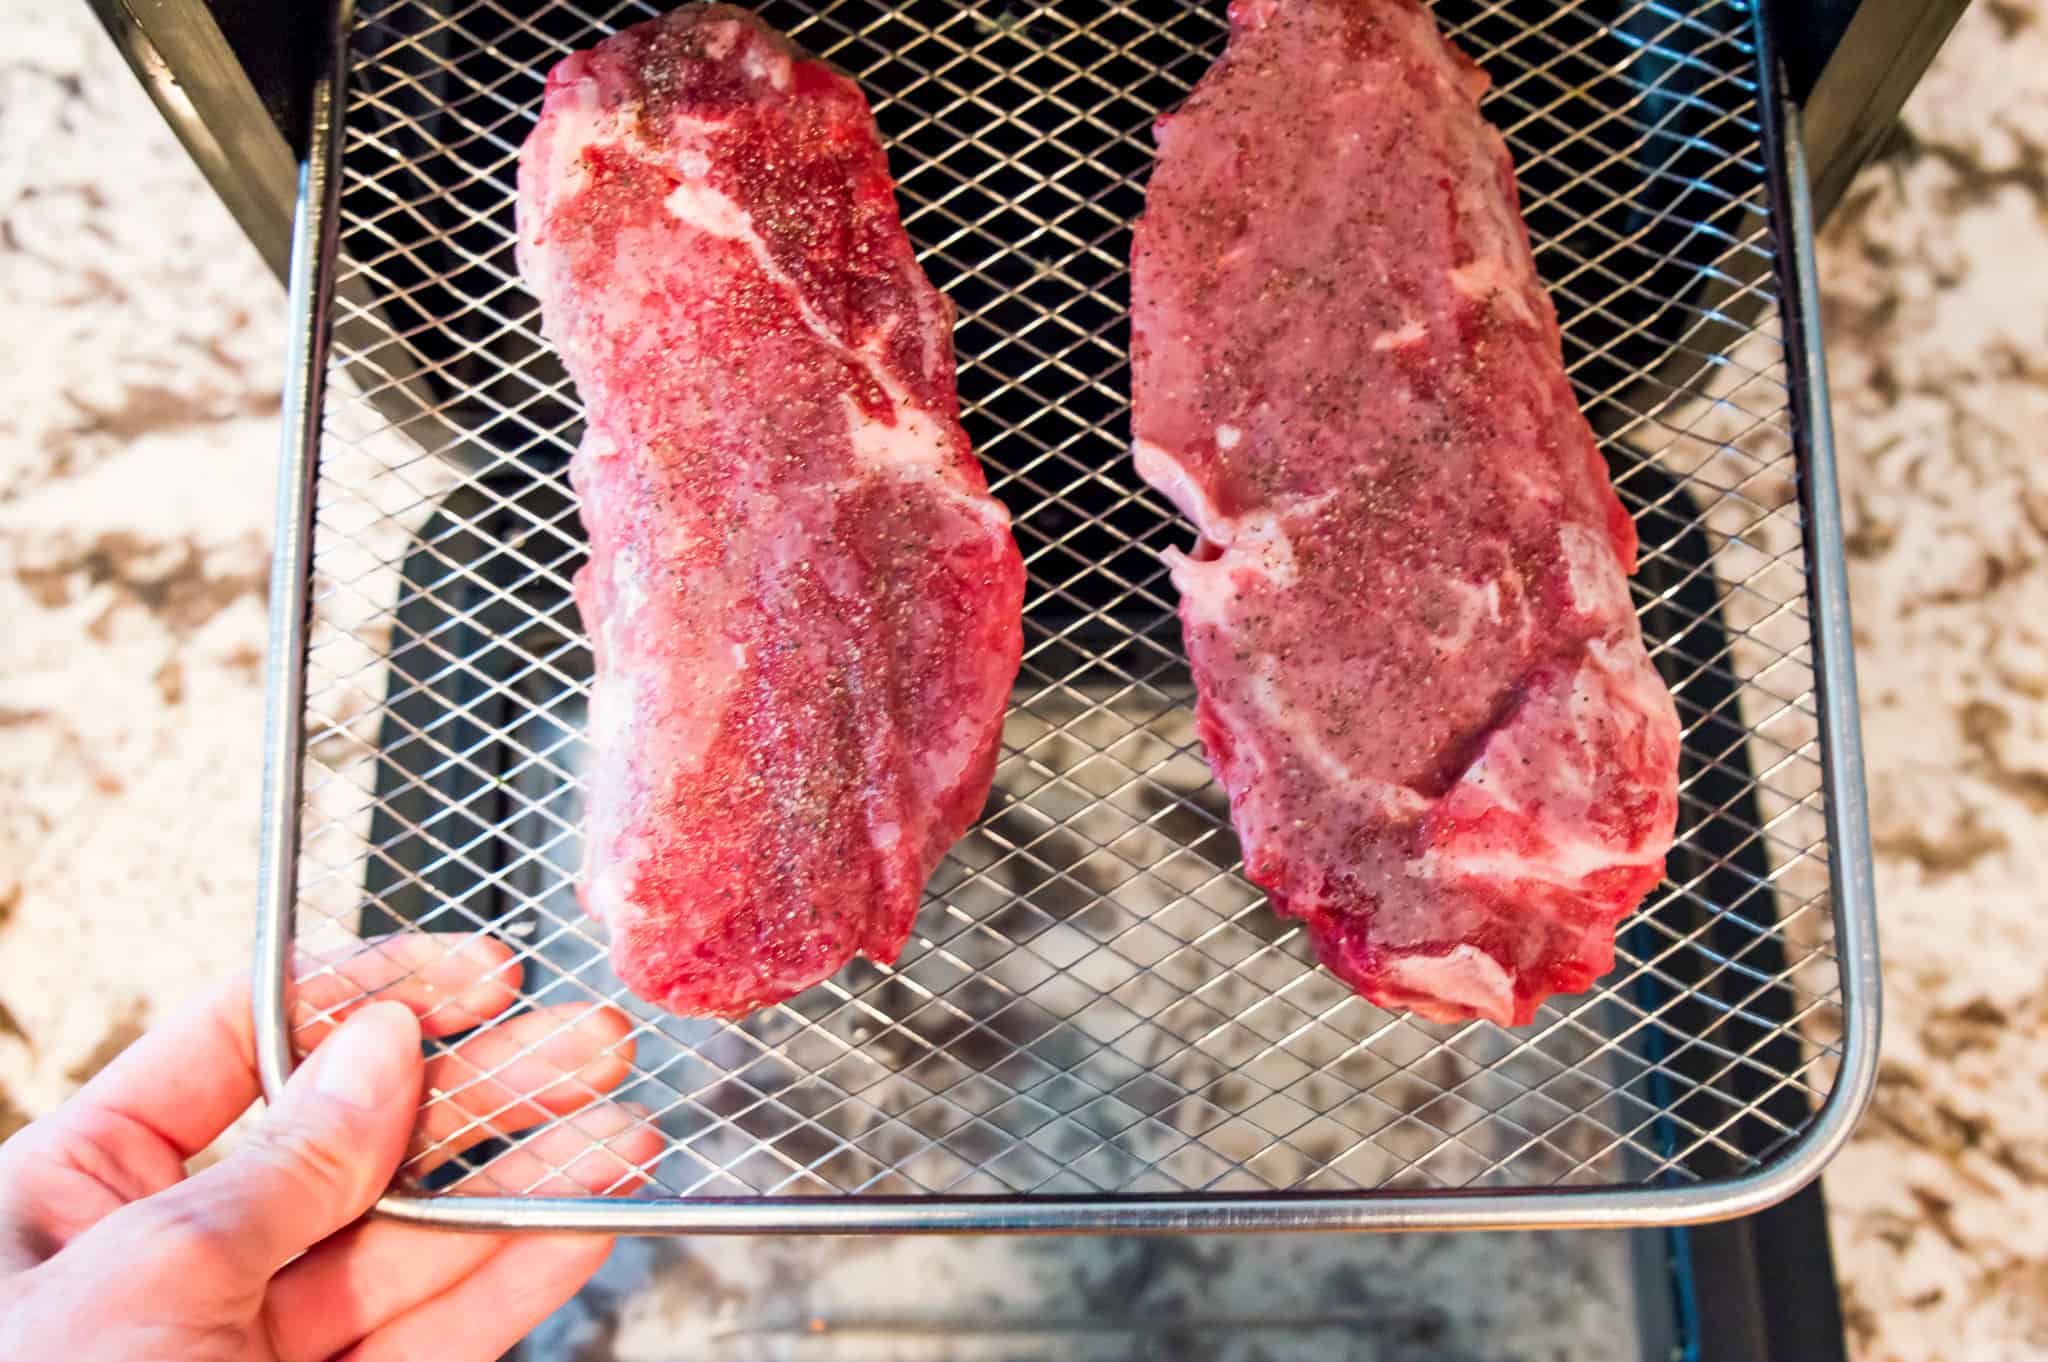 Two frozen steaks on an air fryer rack.